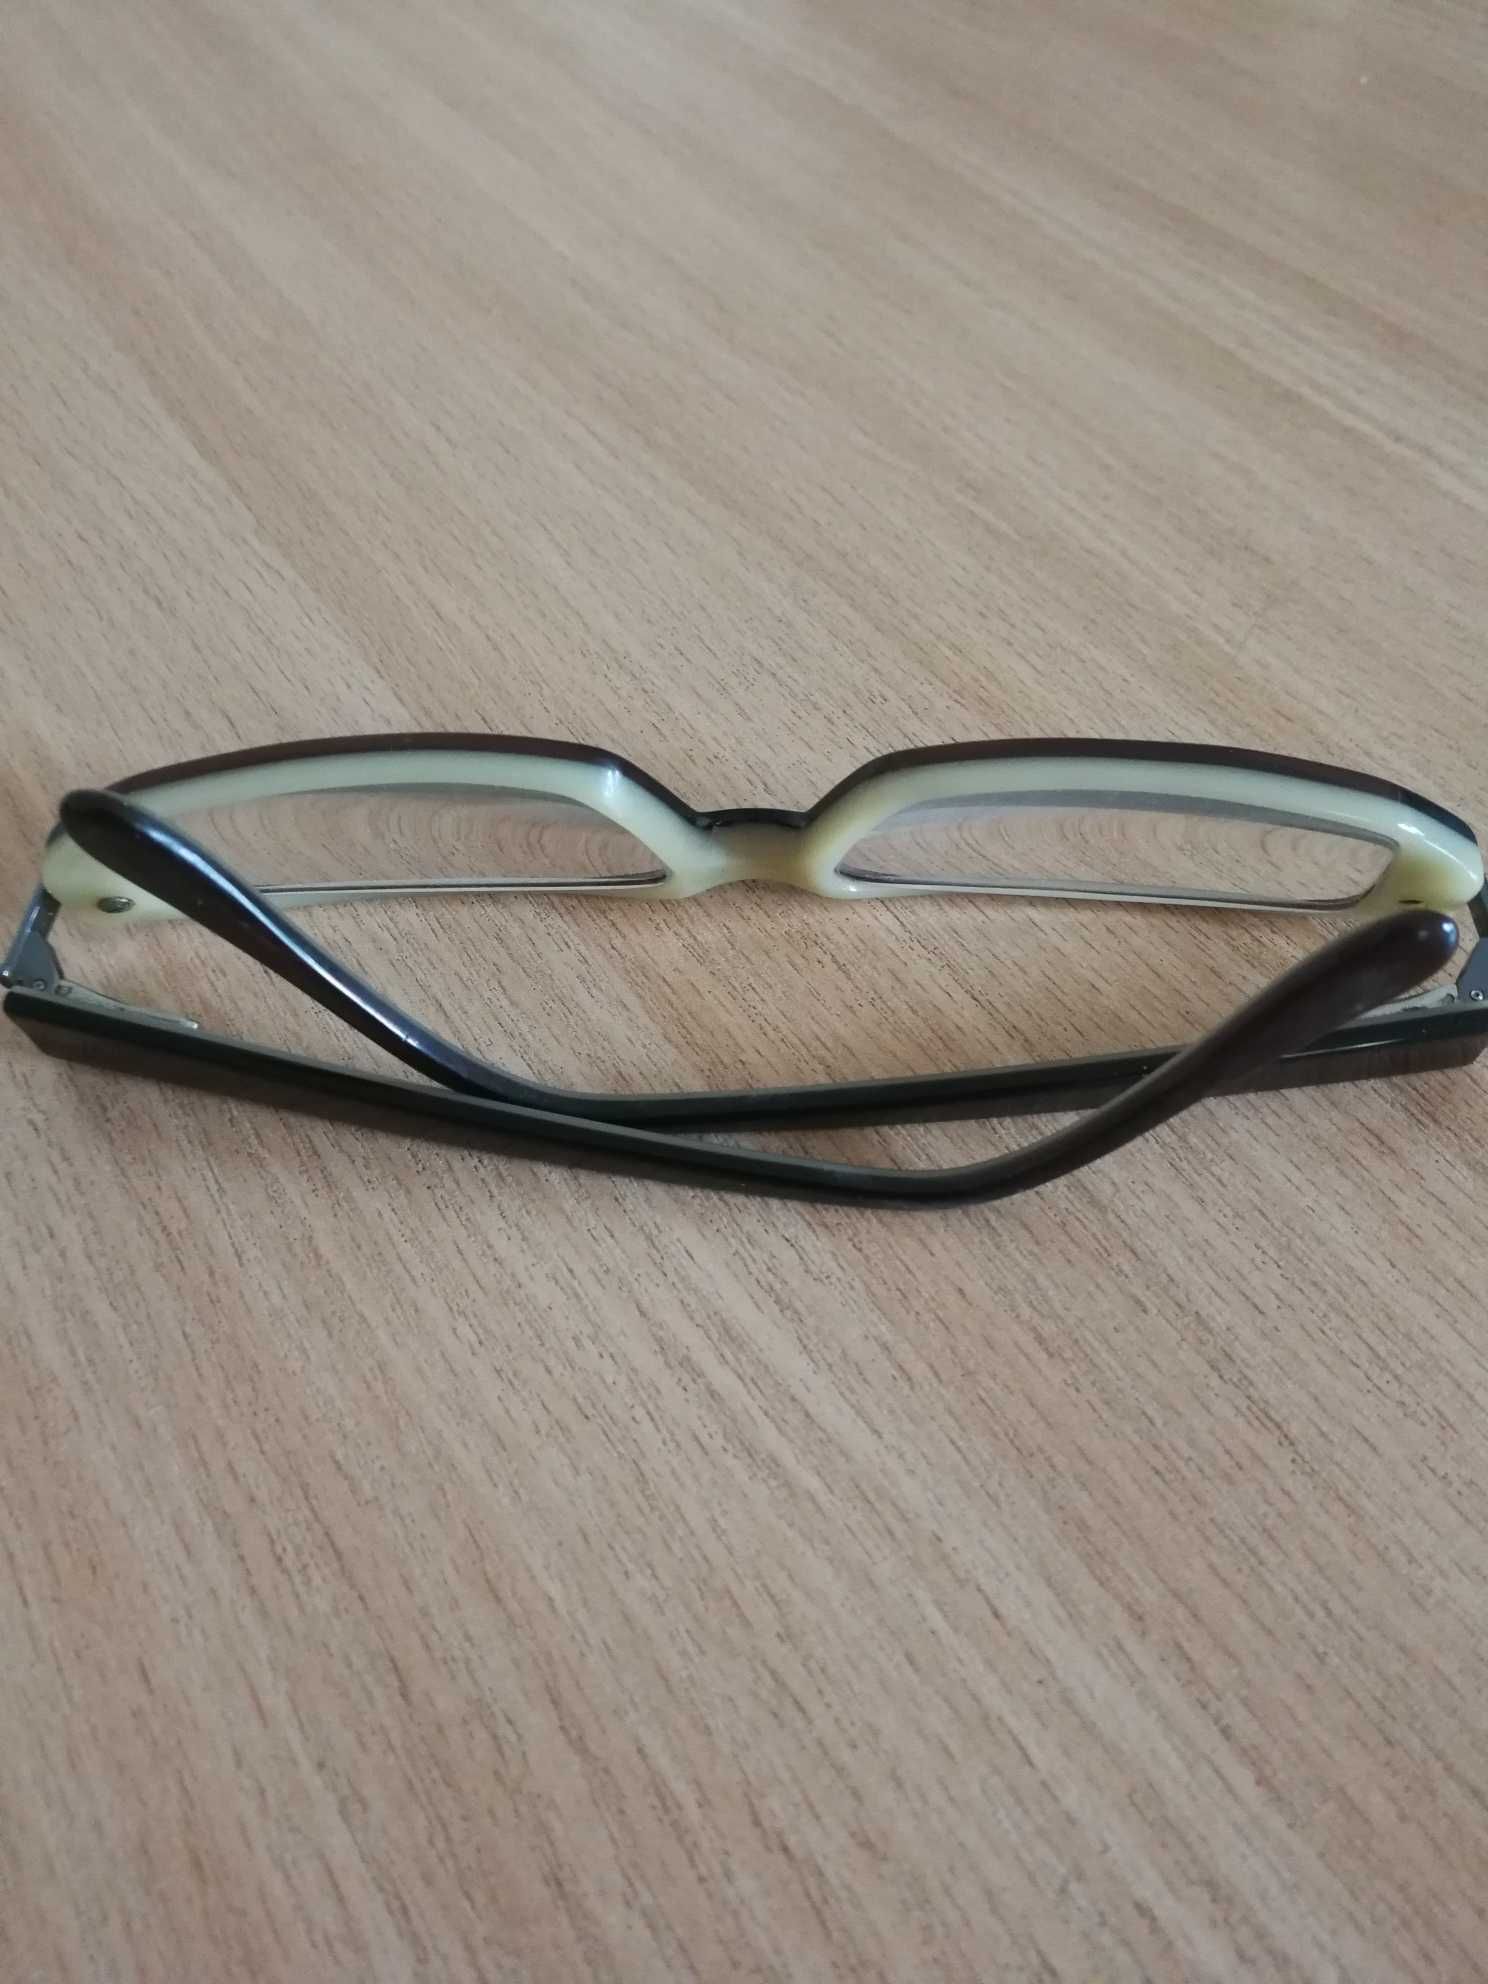 Damskie oprawki do okularów - używane